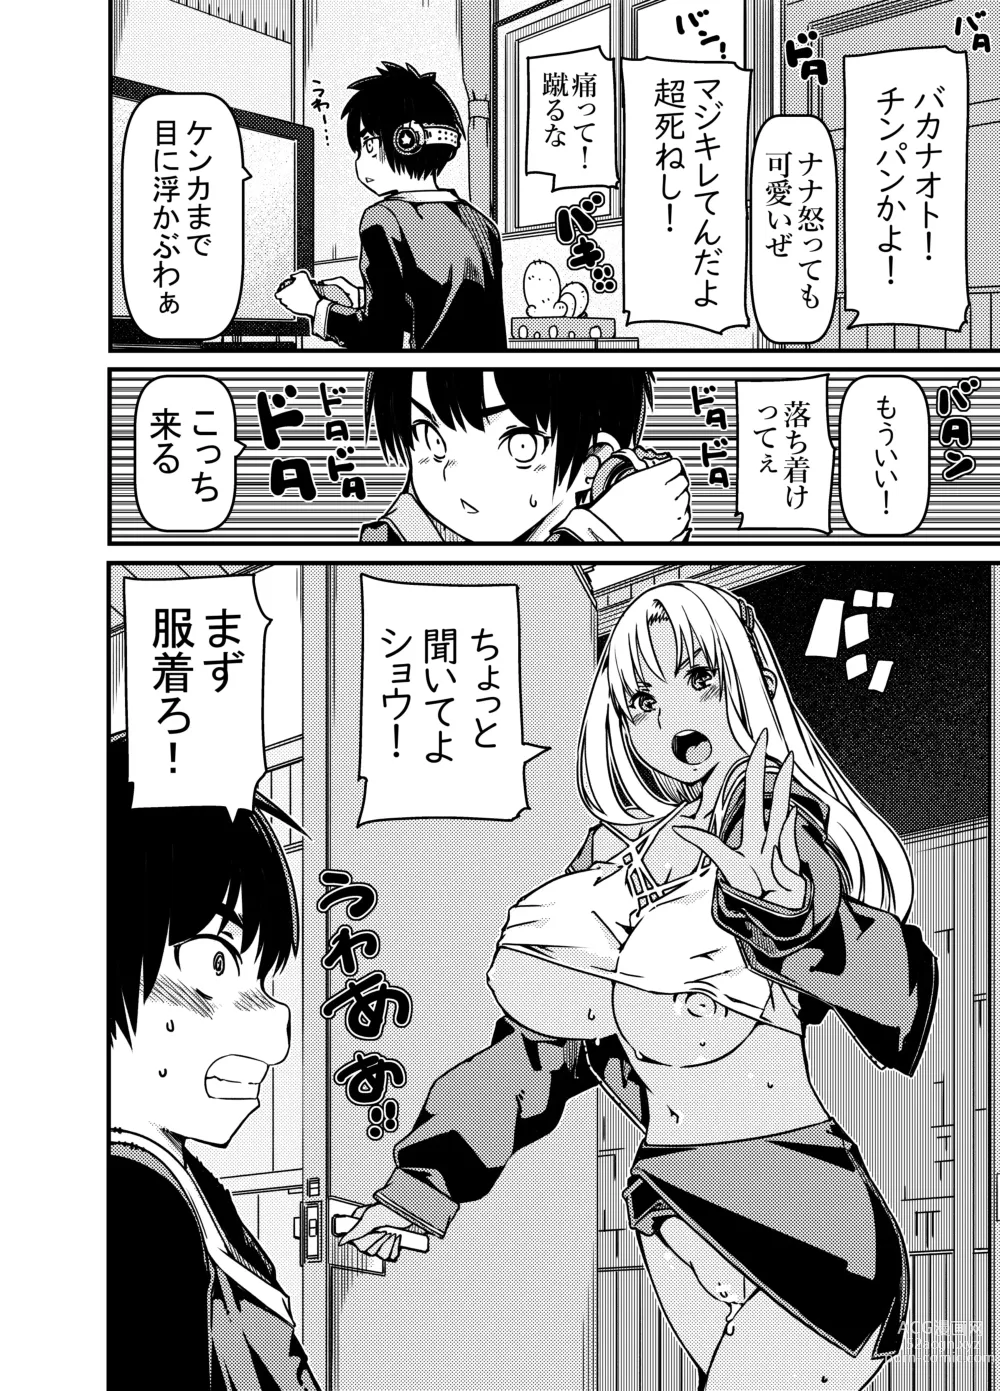 Page 9 of doujinshi Aniki no Kanojo no Kuro Gal to Heya ni Tojikomeraretan dakedo?